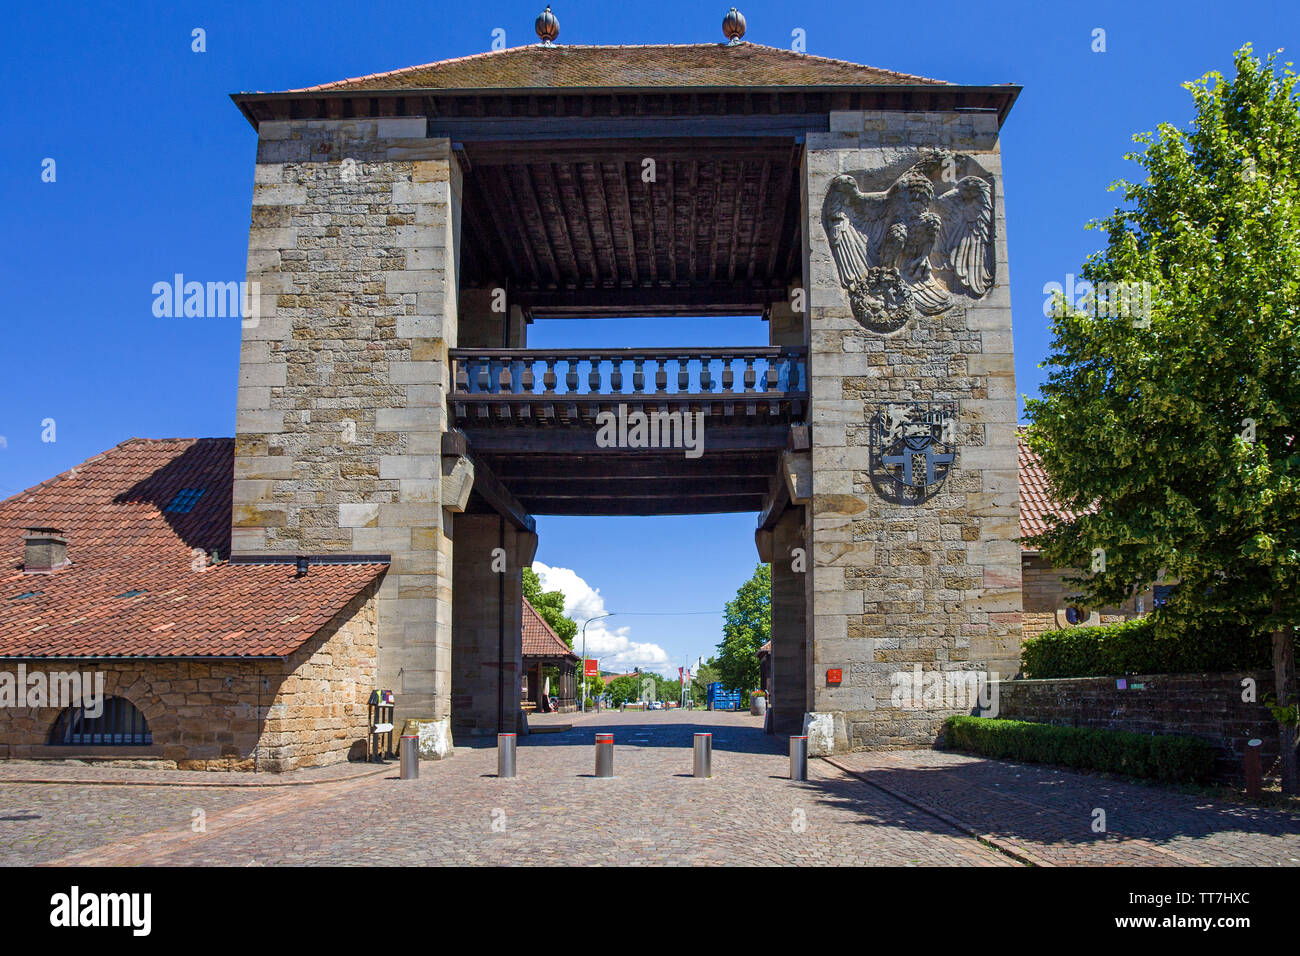 La puerta vino alemán (alemán: Deutsches Weintor) marca el comienzo de la ruta alemana del vino, Schweigen-Rechtenbach, Renania-Palatinado, Alemania Foto de stock